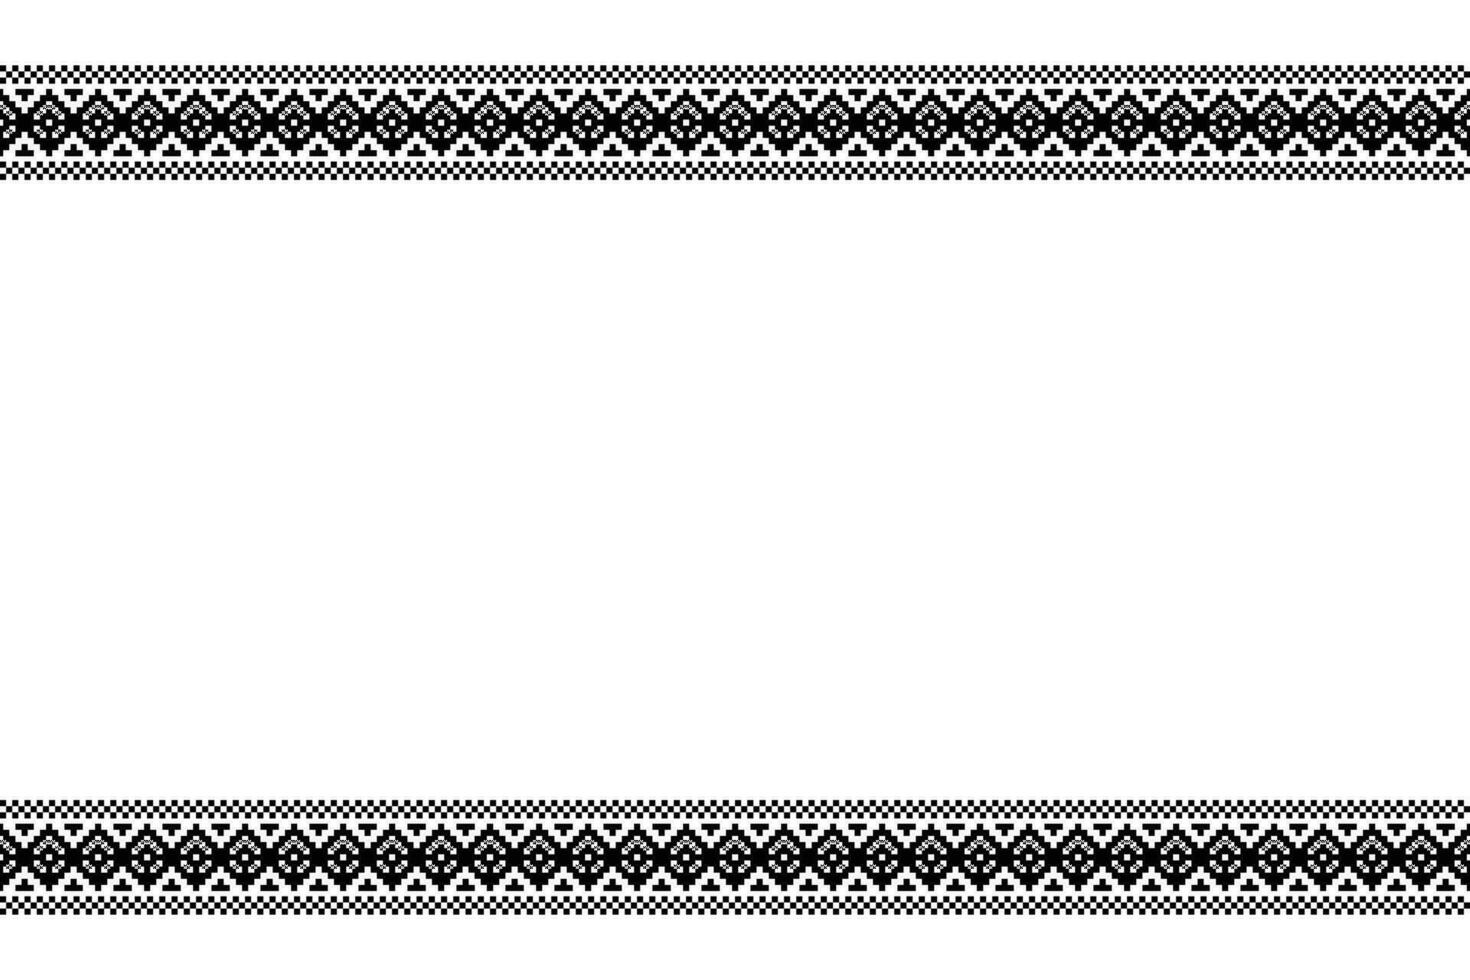 etnisch meetkundig kleding stof patroon kruis steek.ikat borduurwerk etnisch oosters pixel zwart wit achtergrond. abstract,vector,illustratie. textuur,kleding,lijst,decoratie,motieven,zijde behang. vector